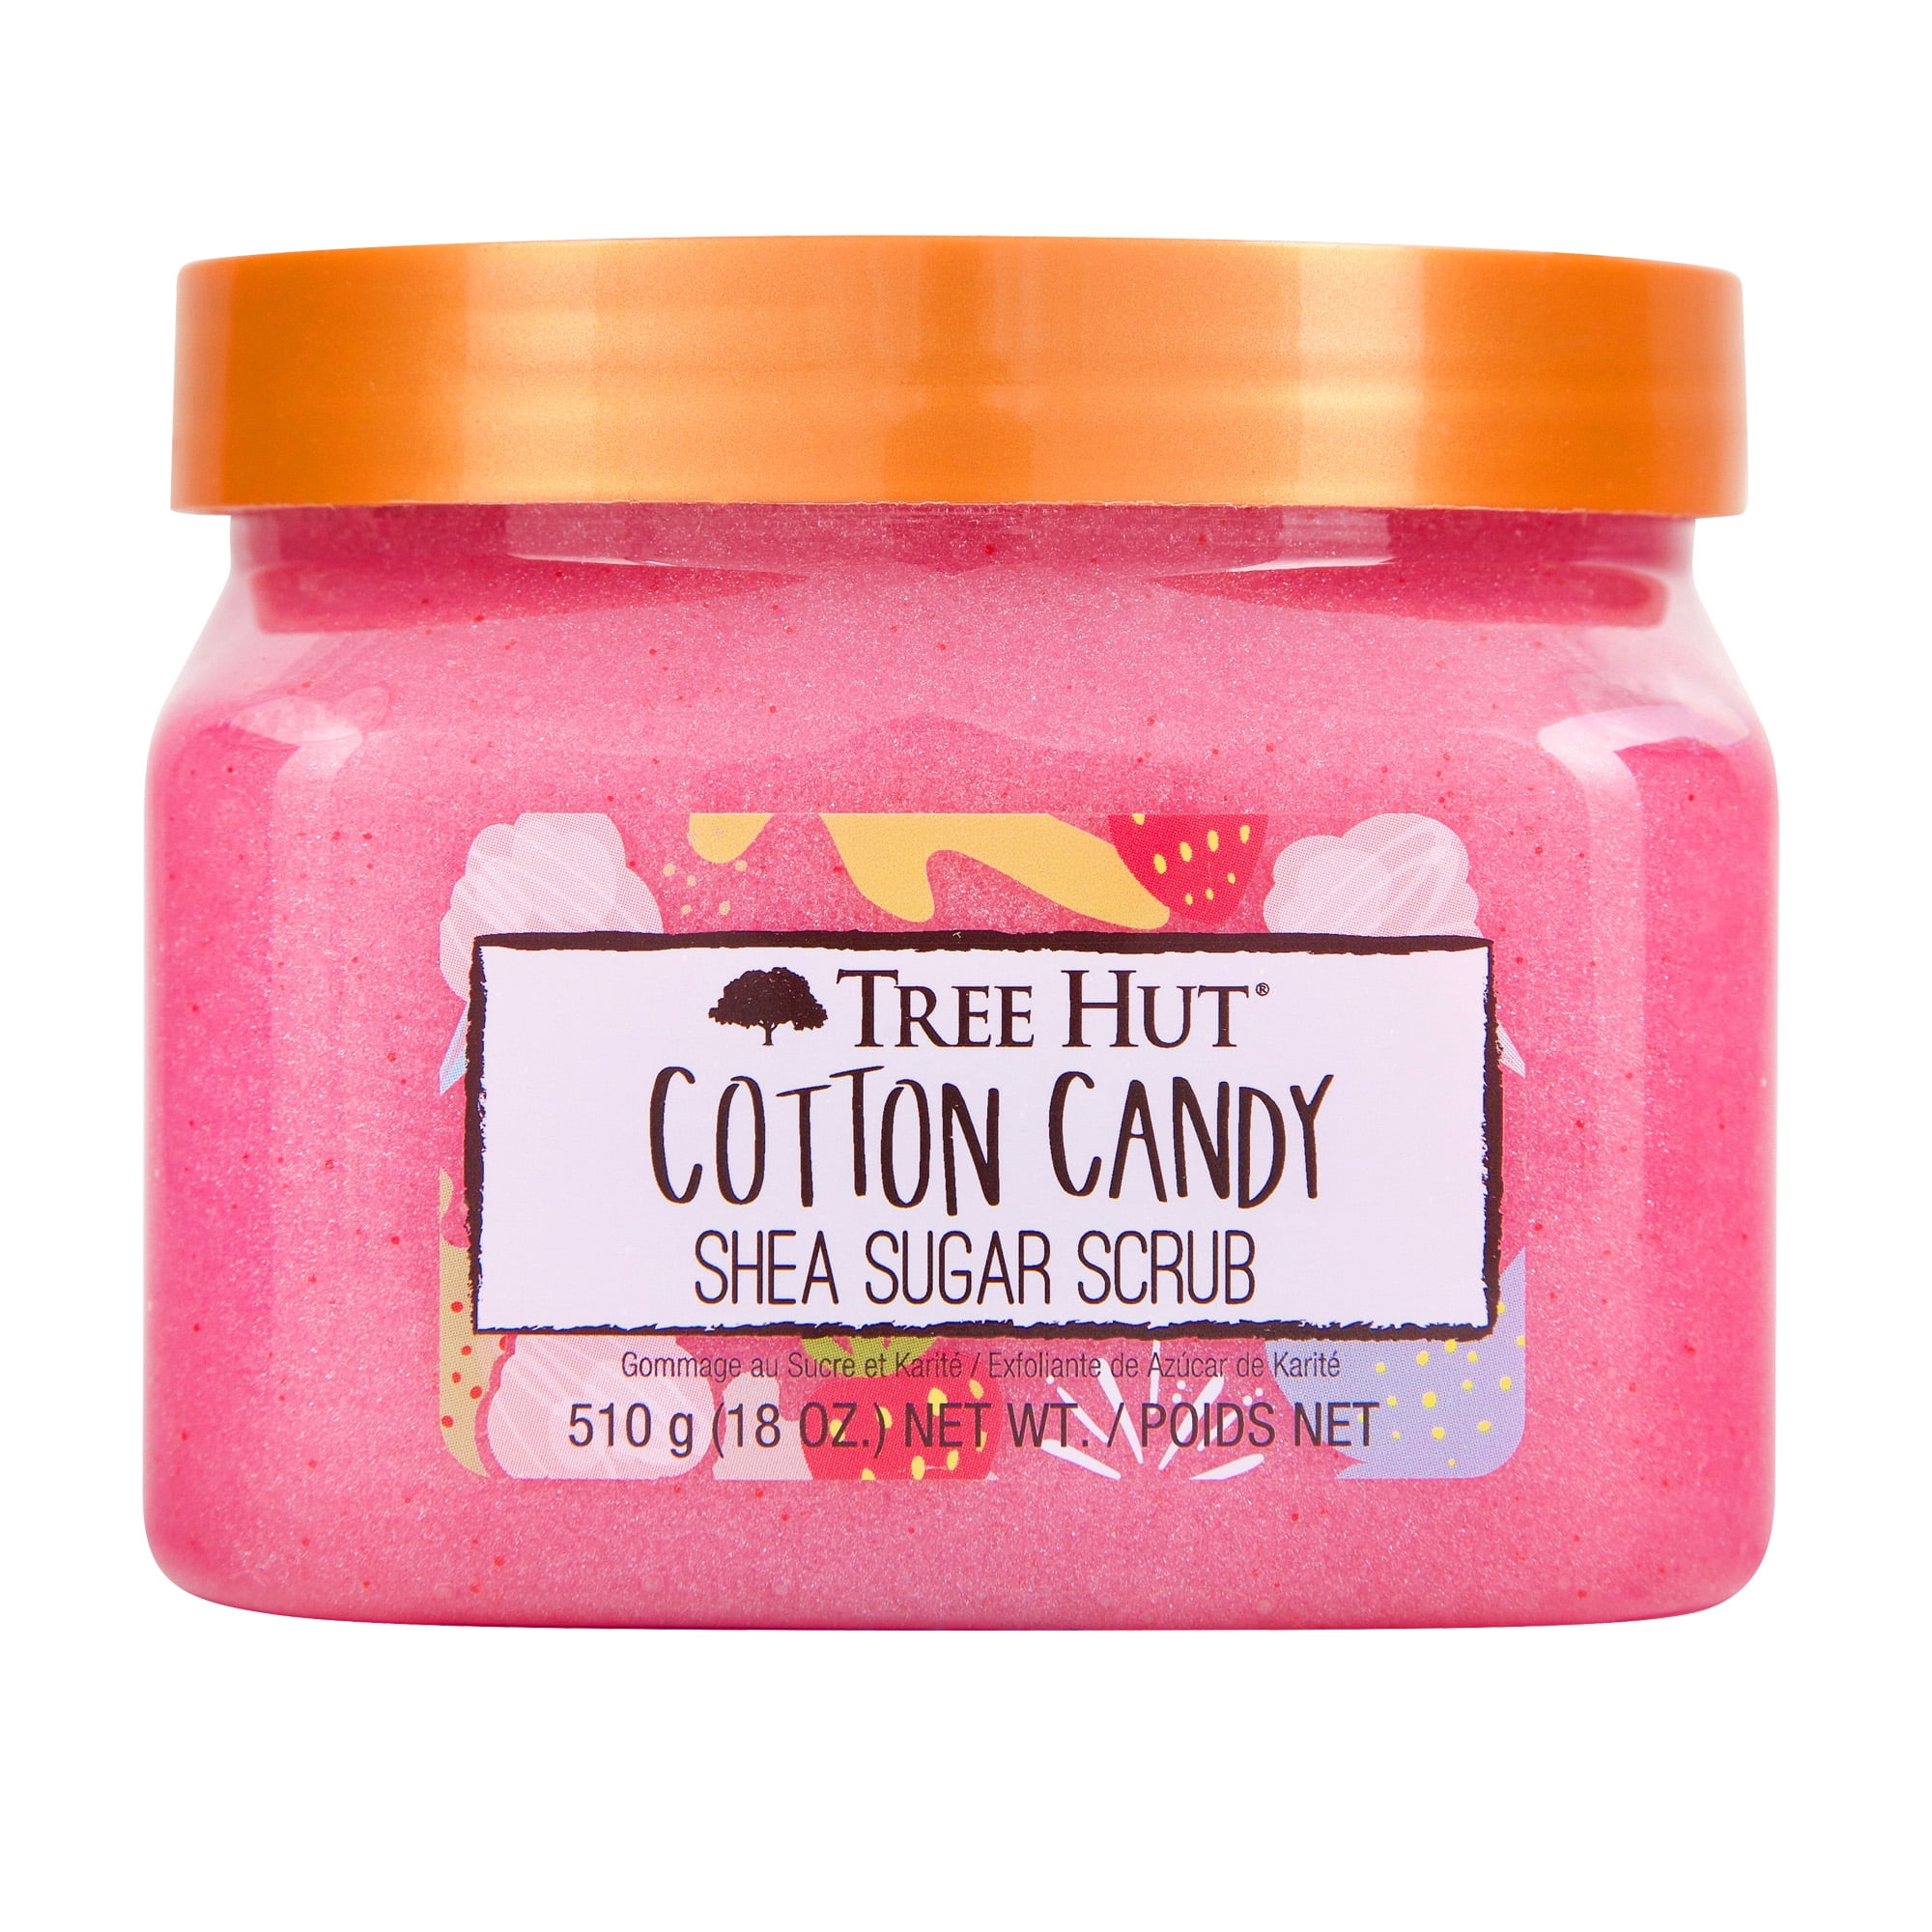 Tree Hut Cotton Candy Shea Sugar Exfoliating and Hydrating Body Scrub, 18 oz.